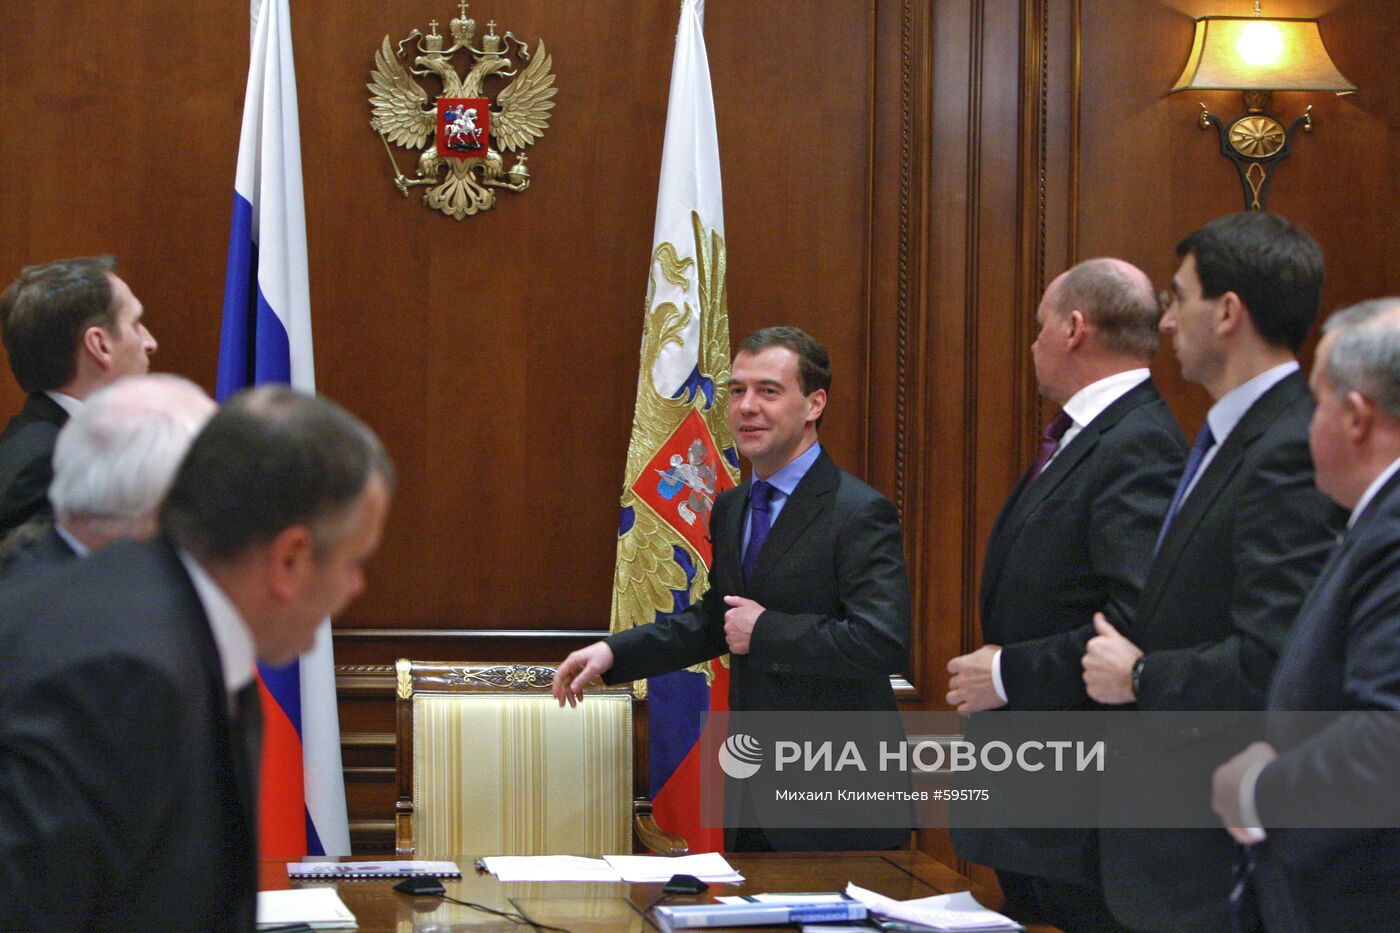 Д.Медведев провел совещание по информационному присутствию СНГ